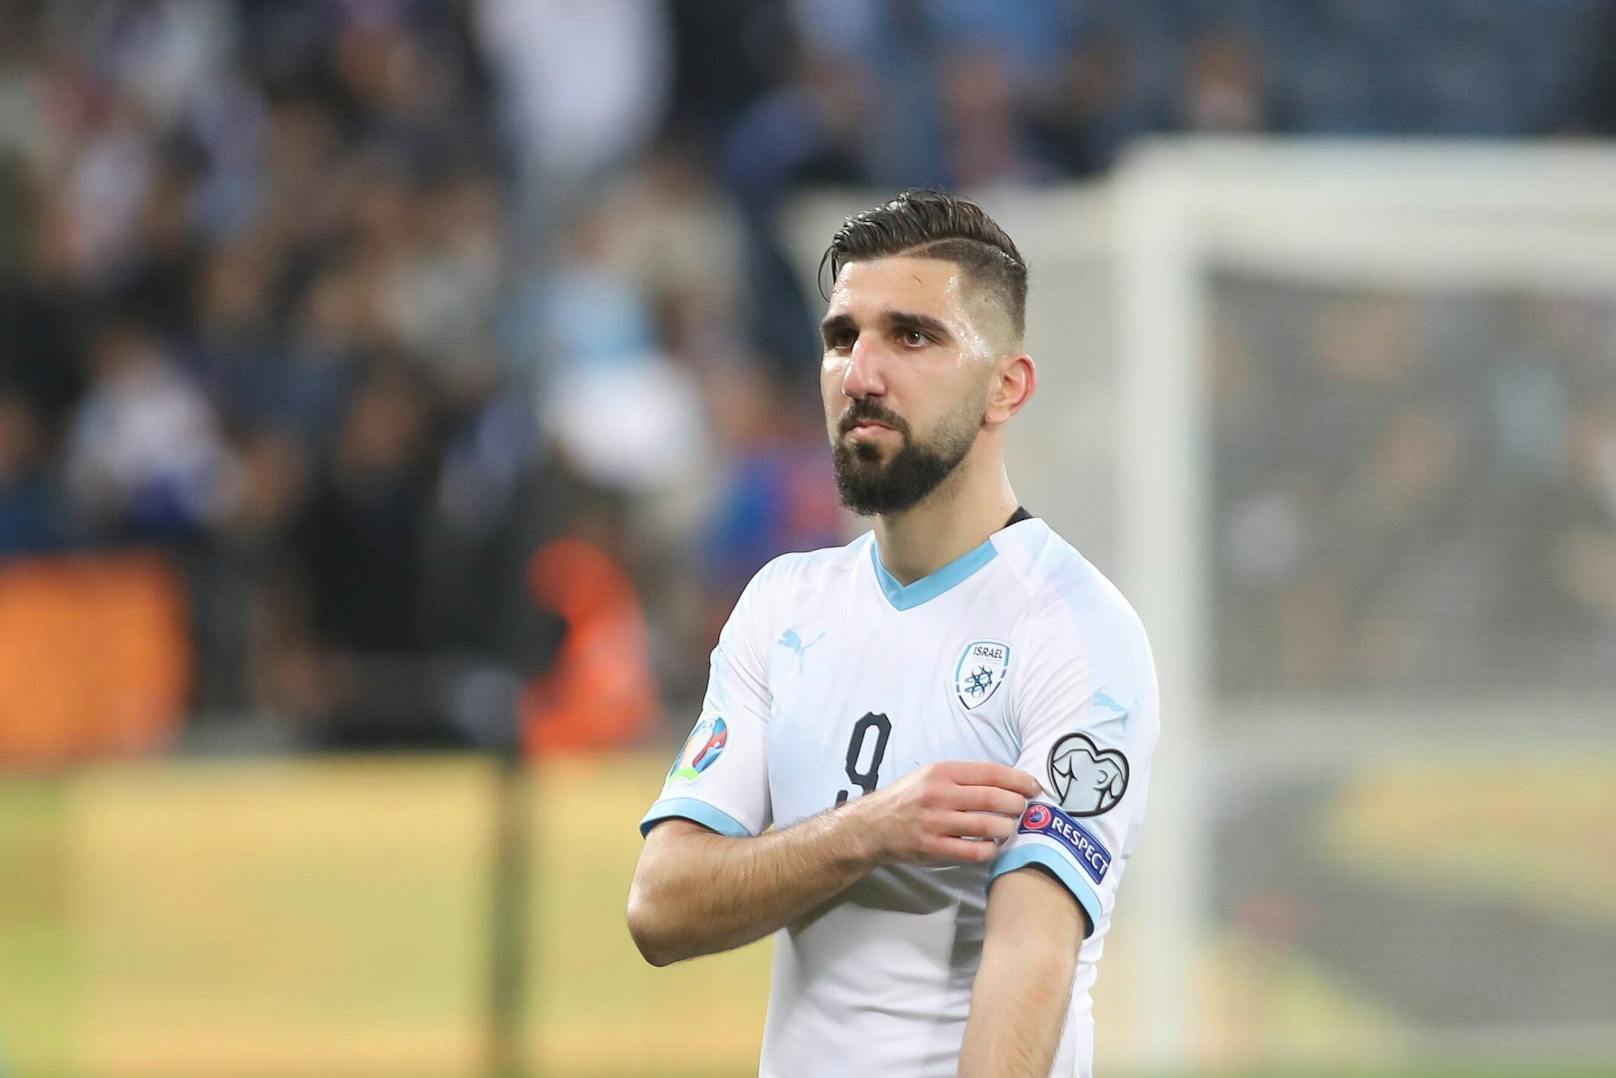 Munas Dabbur sorgte beim israelischen Nationalteam für Ärger.